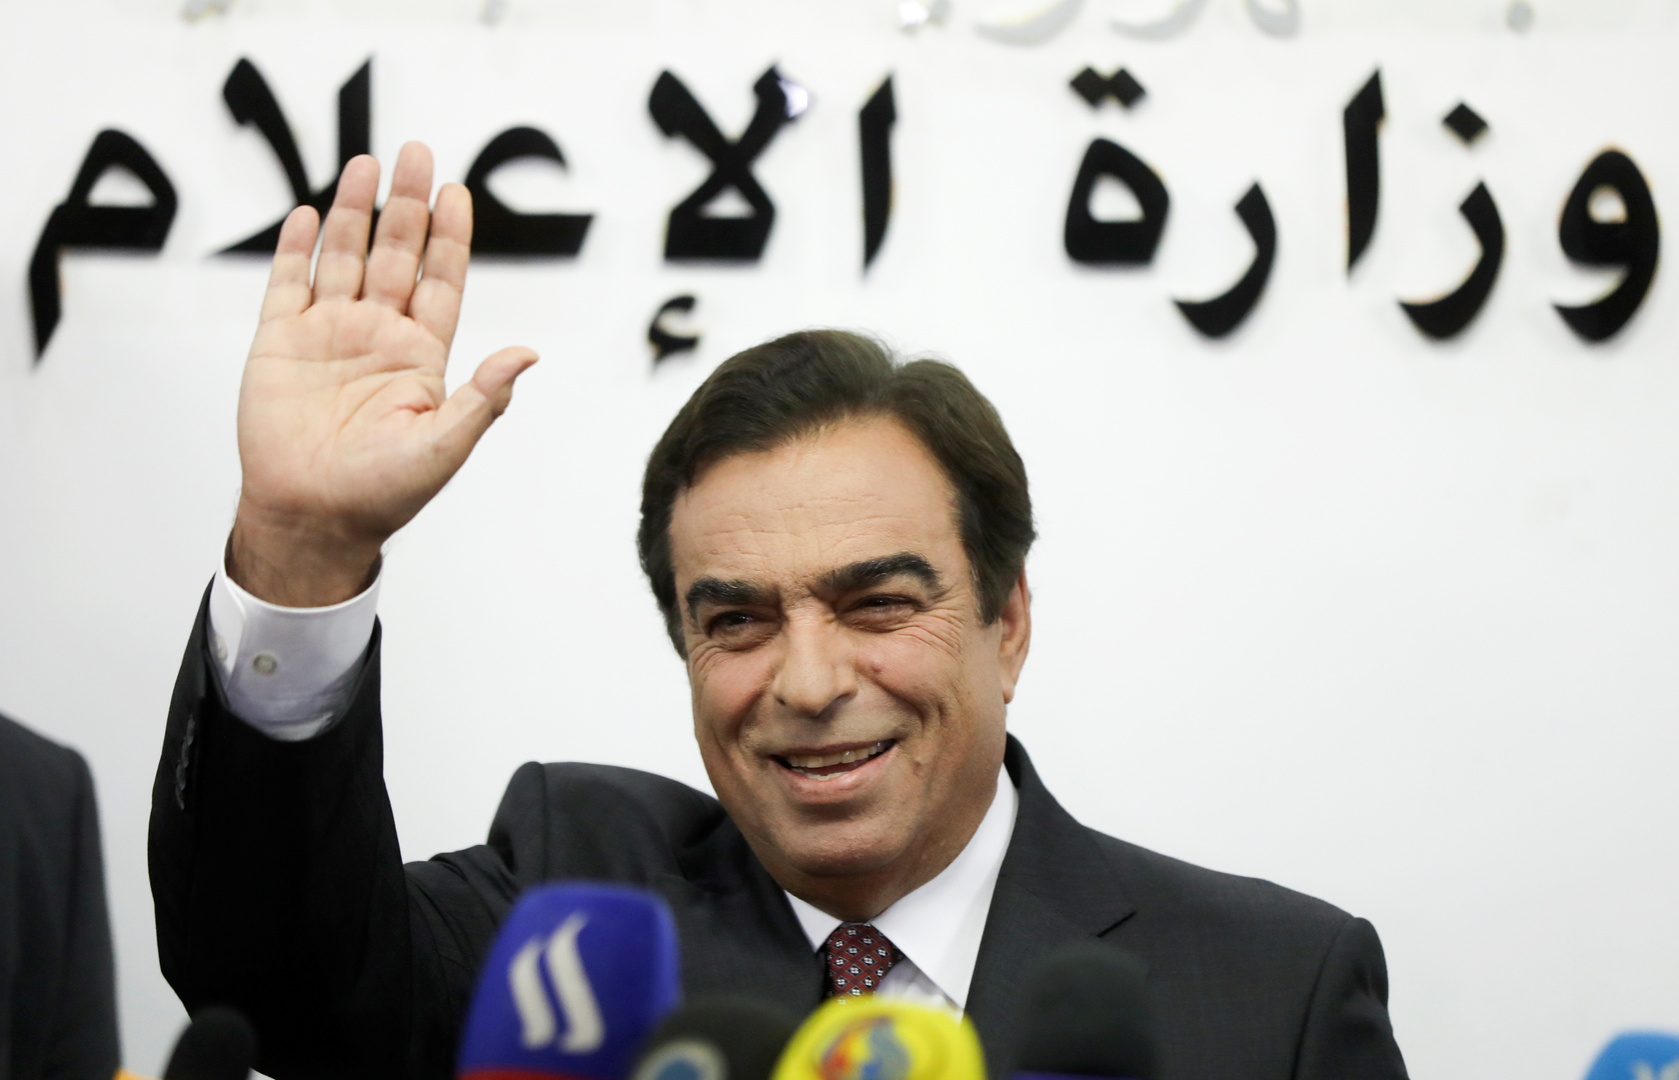 وزير الإعلام اللبناني جورج قرداحي يعلن استقالته رسميا